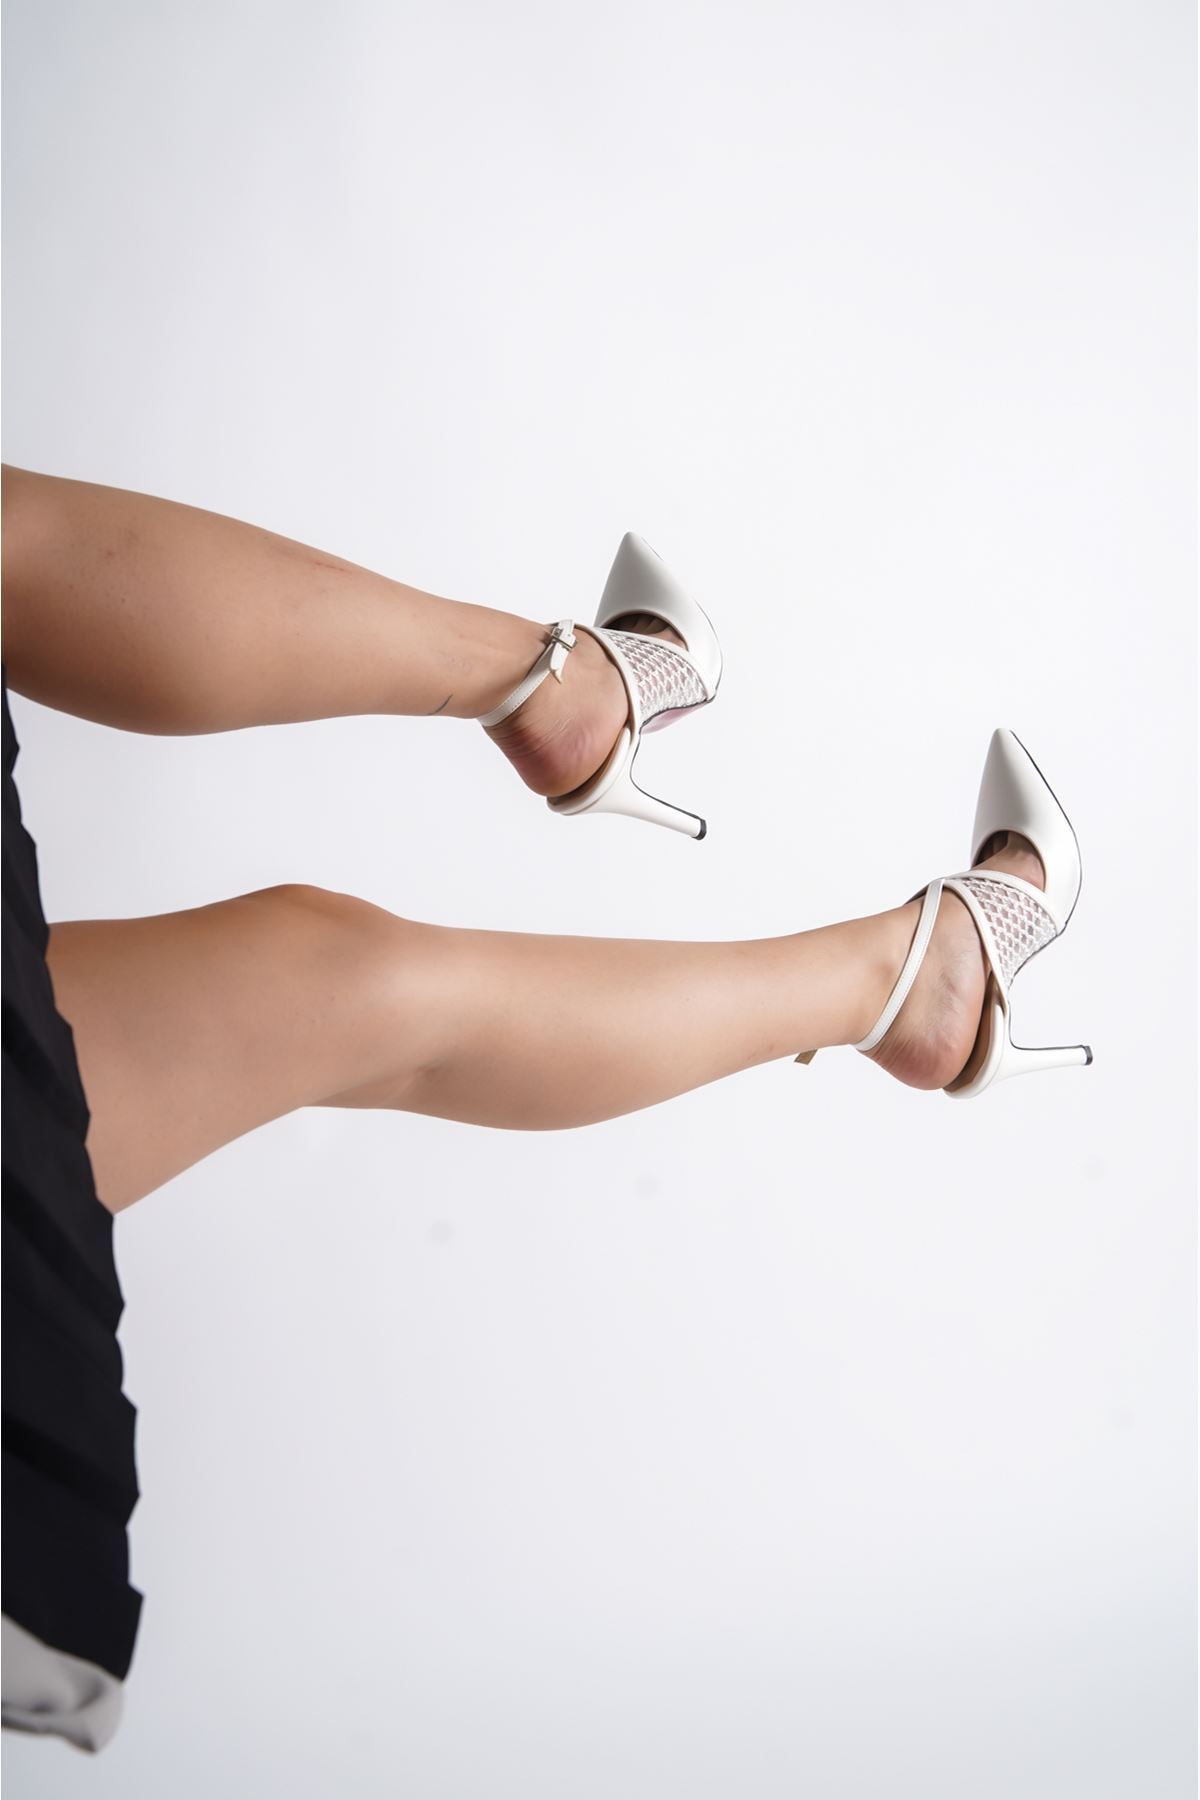 Beyaz Cilt Beyaz File Detaylı  Özel Tasarım Kadın İnce Topuklu Ayakkabı Stiletto Harlow